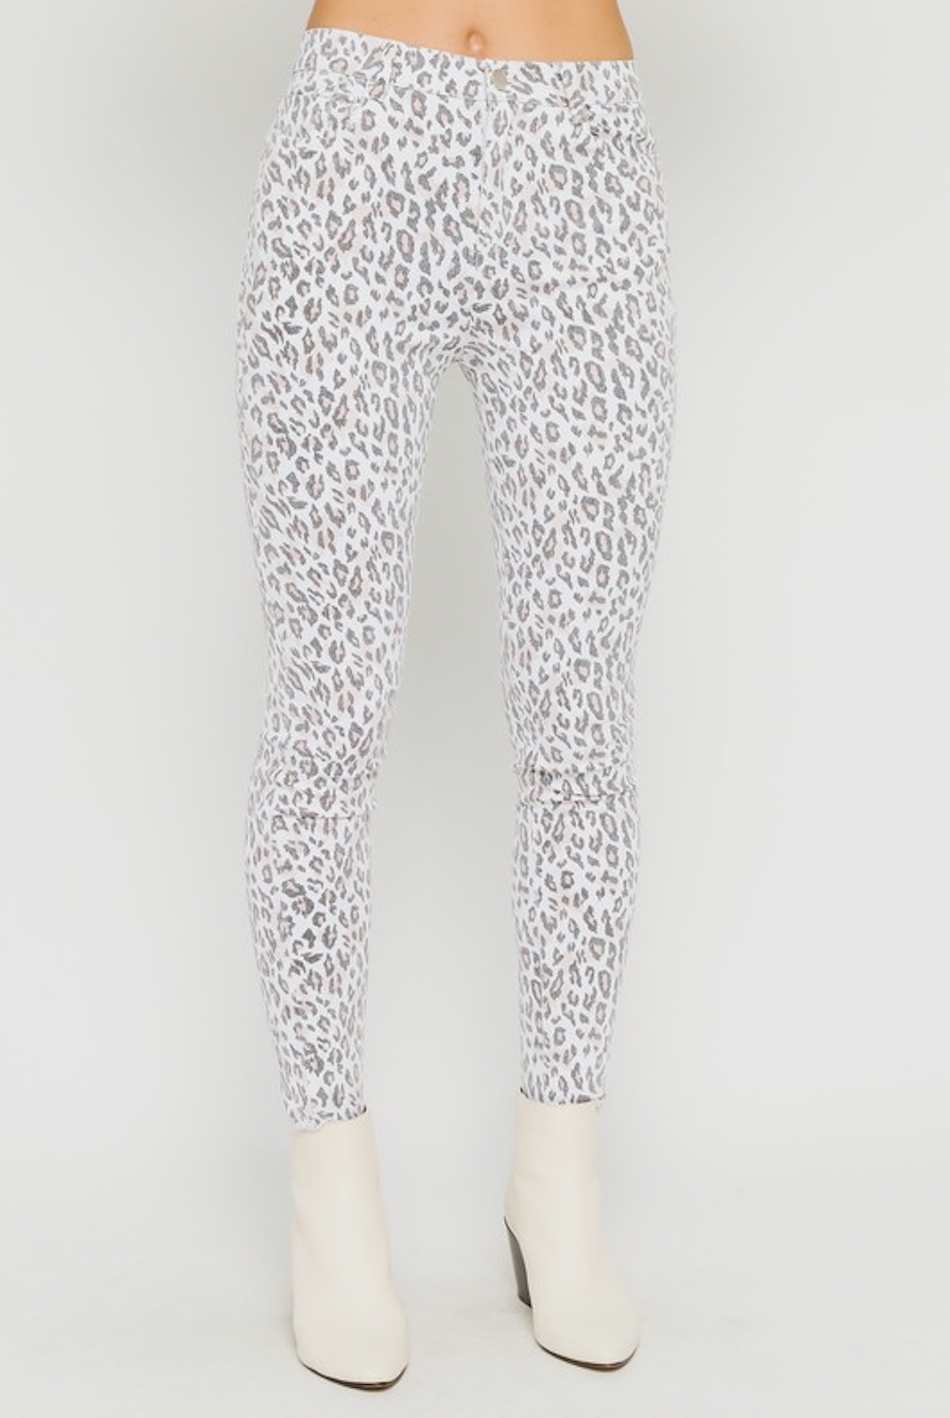 Blush Leopard Pants